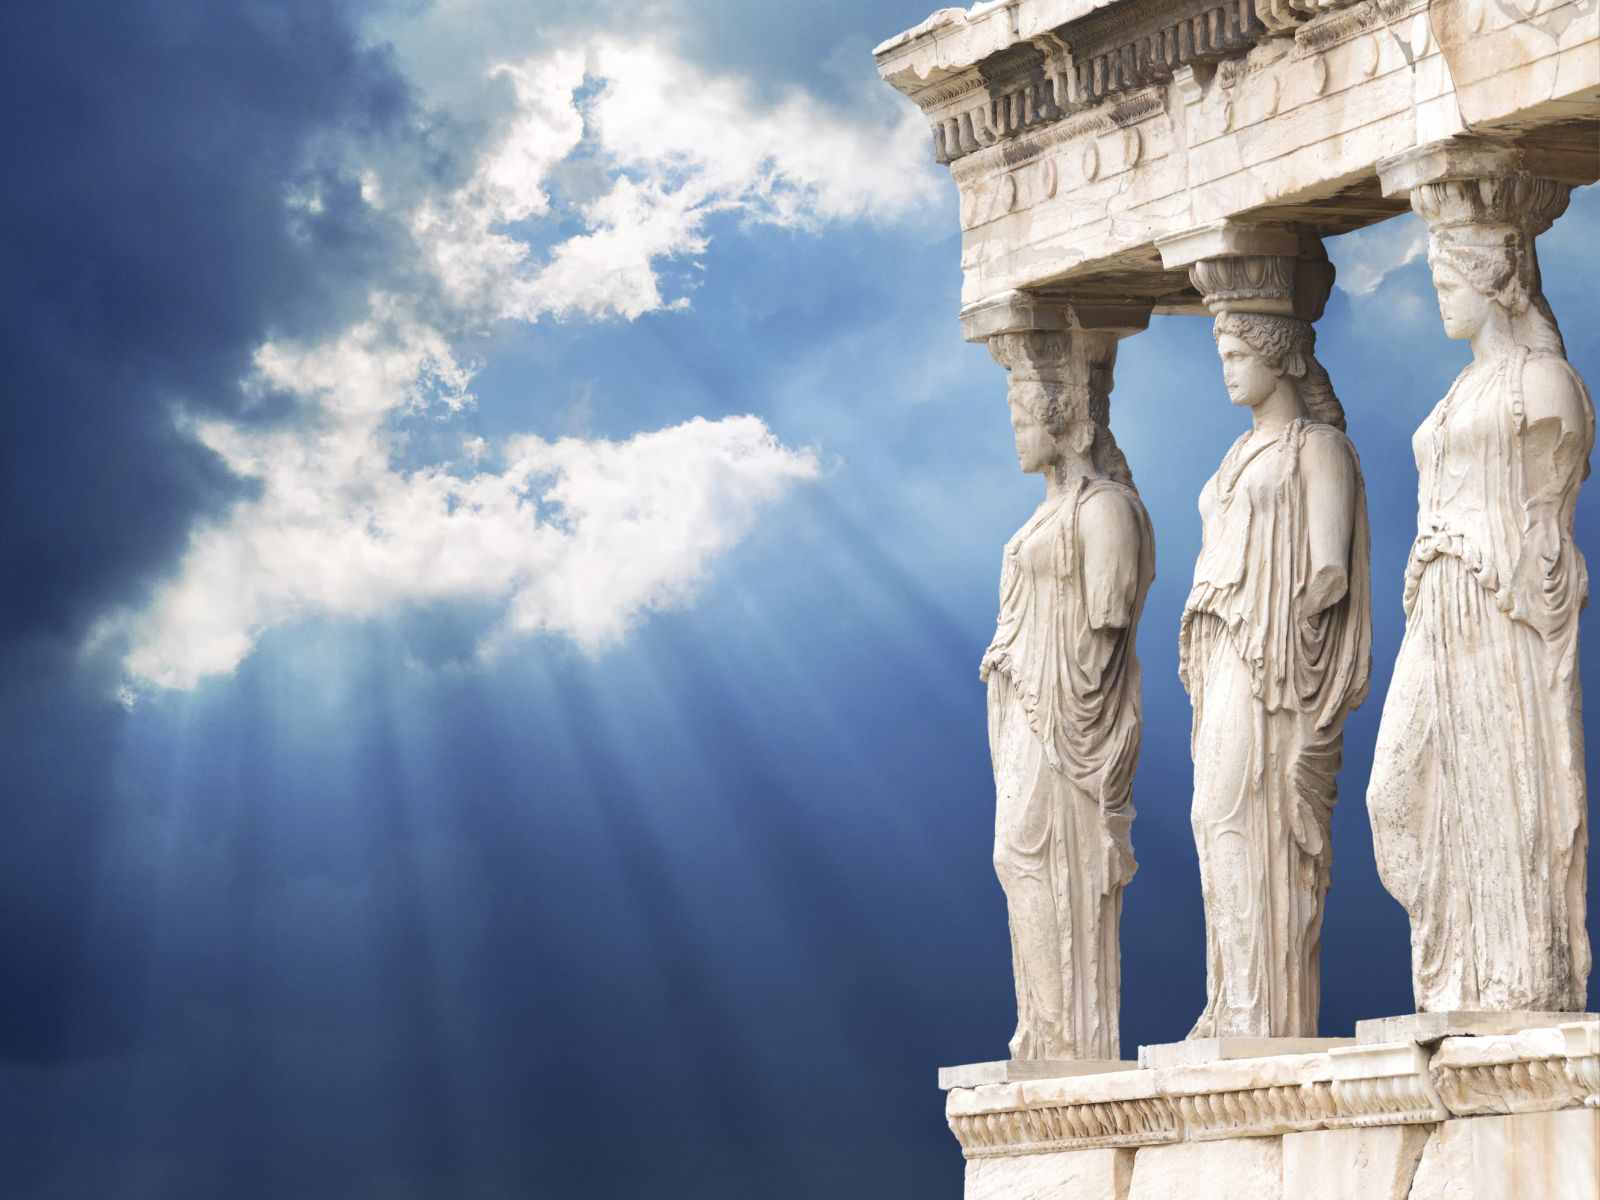 Μ.Ζορμπά (υπουργός Πολιτισμού): «Η Ακρόπολη συμβολίζει το κλασικό και τη δημοκρατία» – Όχι τον Ελληνισμό;